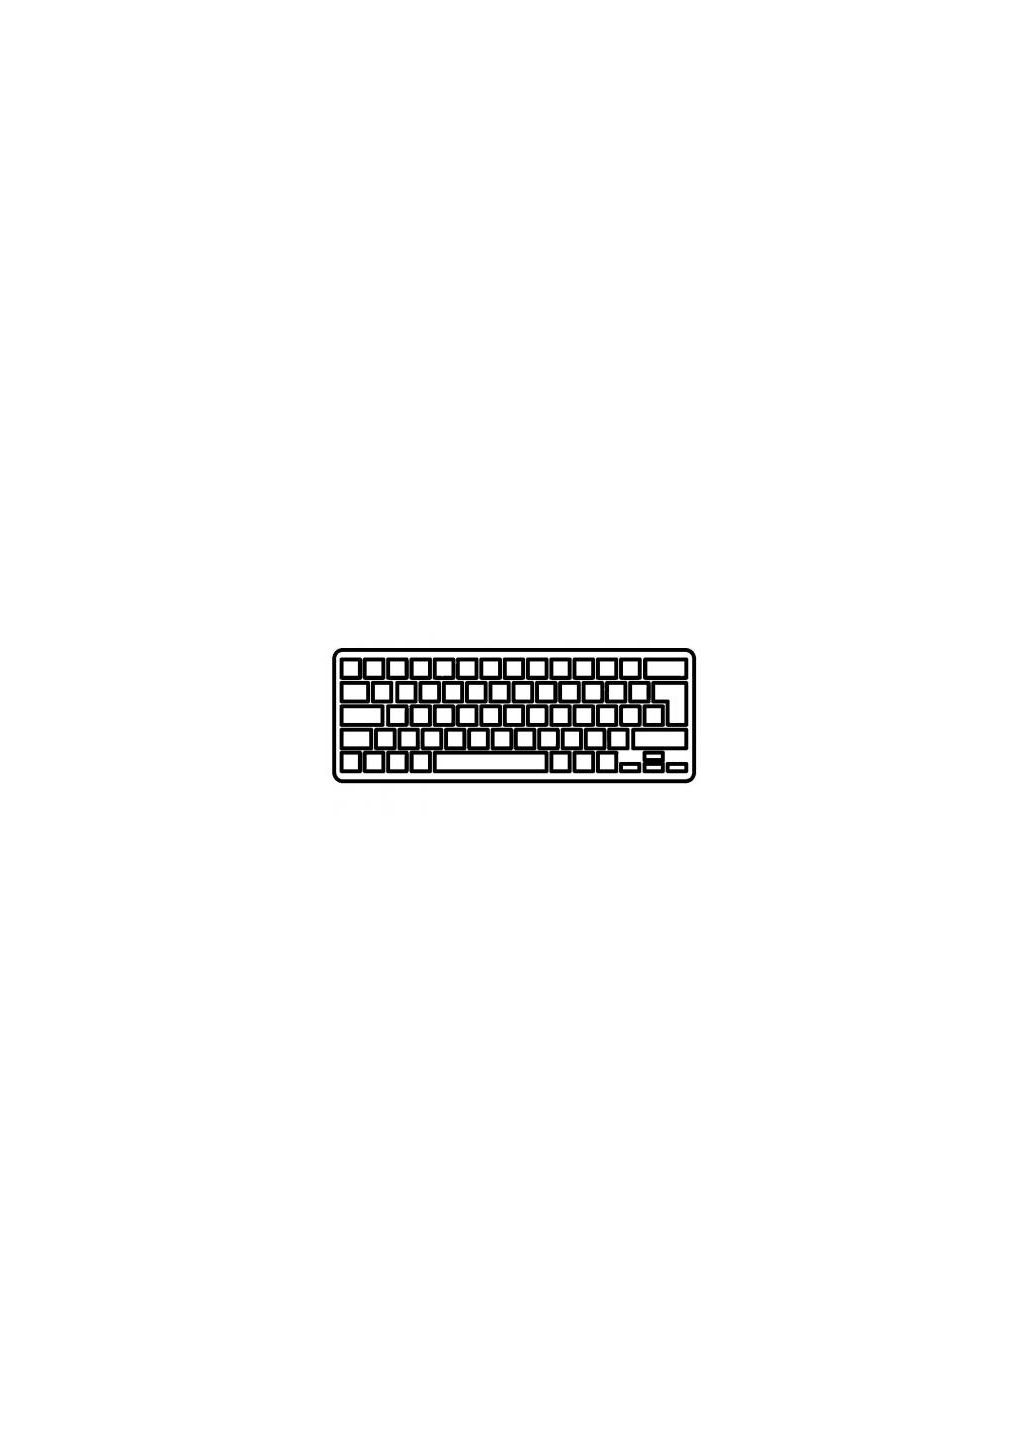 Клавиатура для ноутбука XSlim X300/X320/X340/X400 белая UA (A43410) MSI x-slim x300/x320/x340/x400 белая ua (276706534)